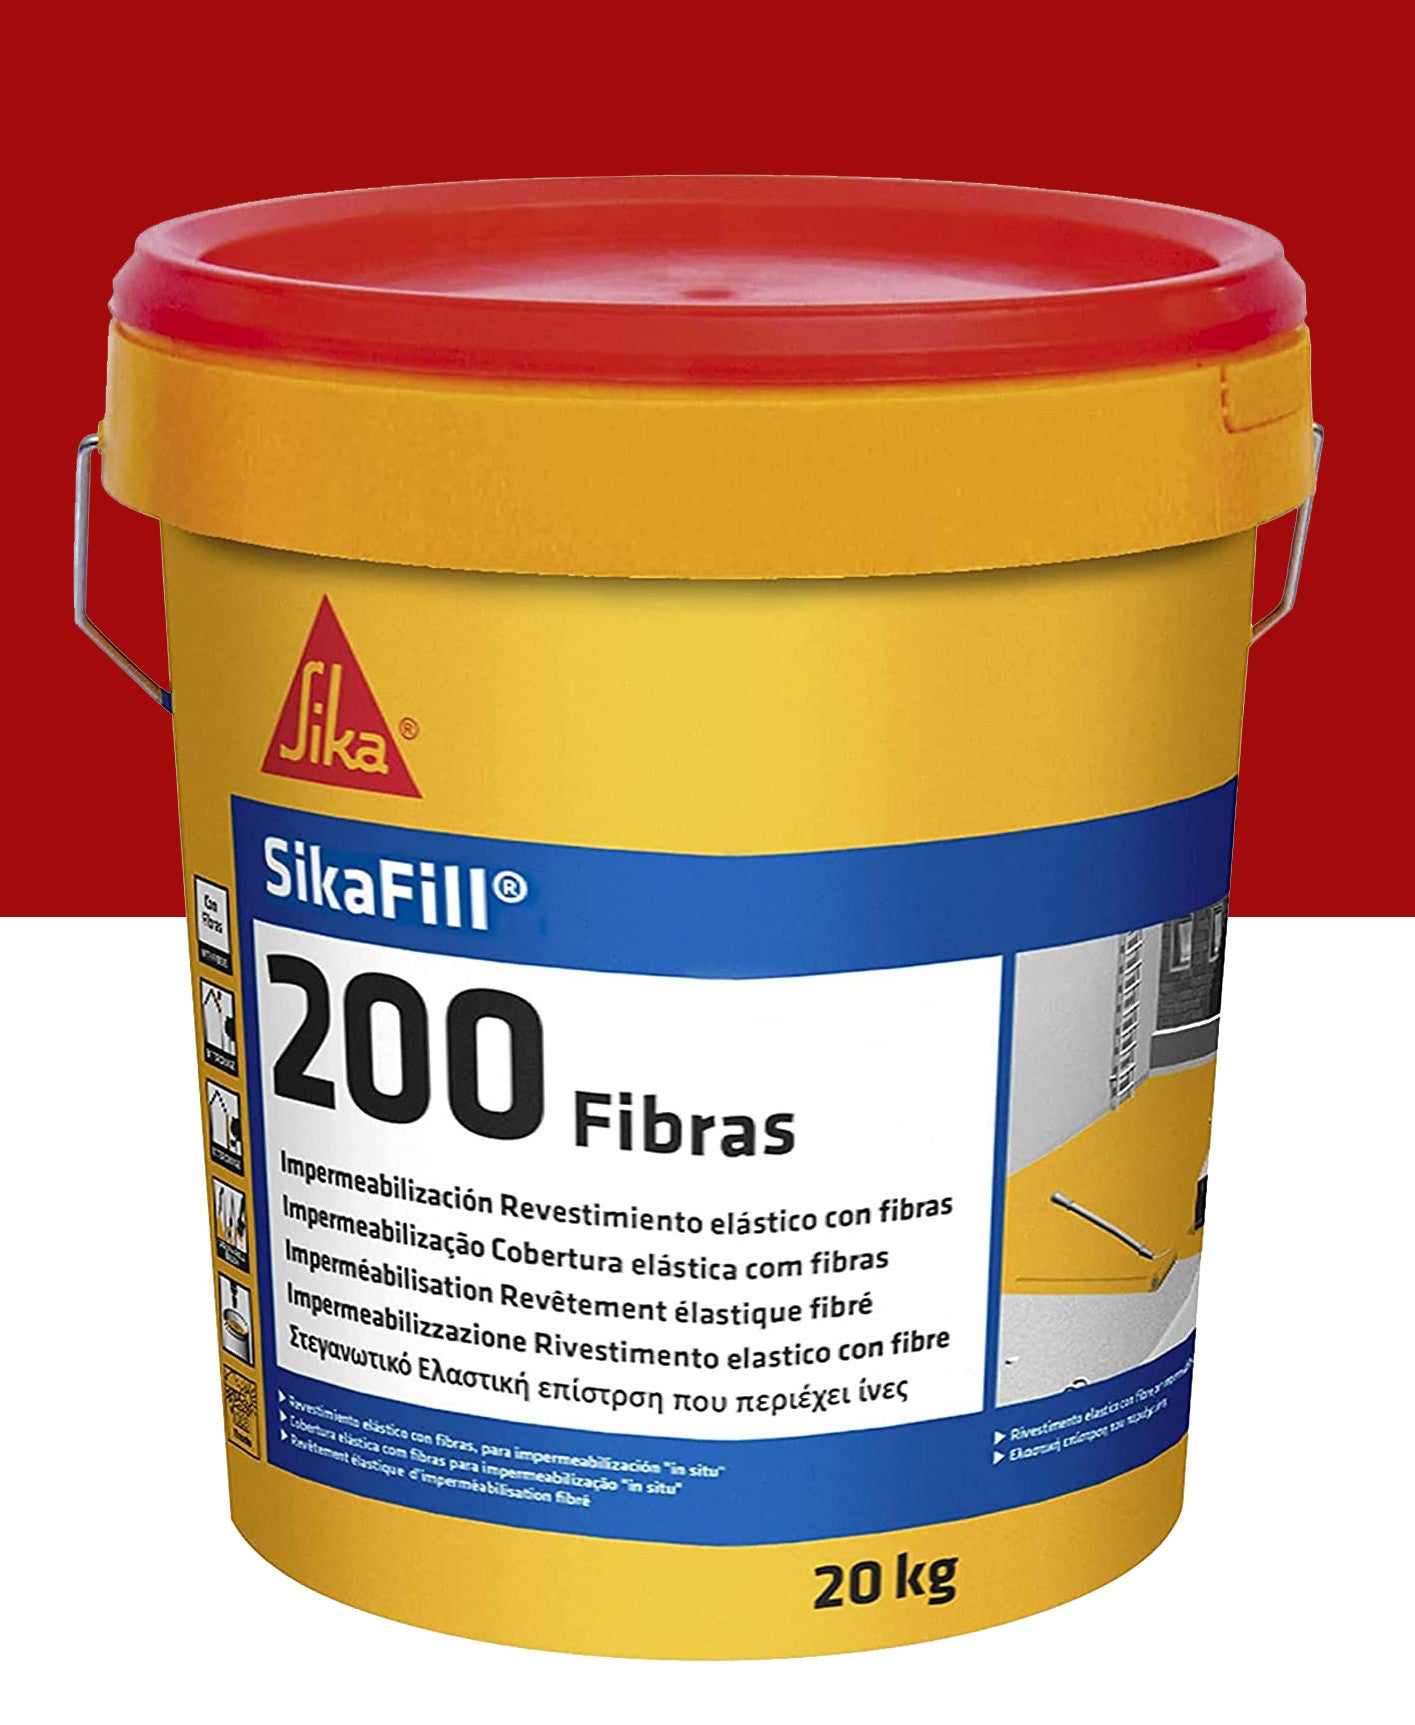 Bote Pintura Impermeable Sikafill-200 Fibras 20kg SIKA - 5